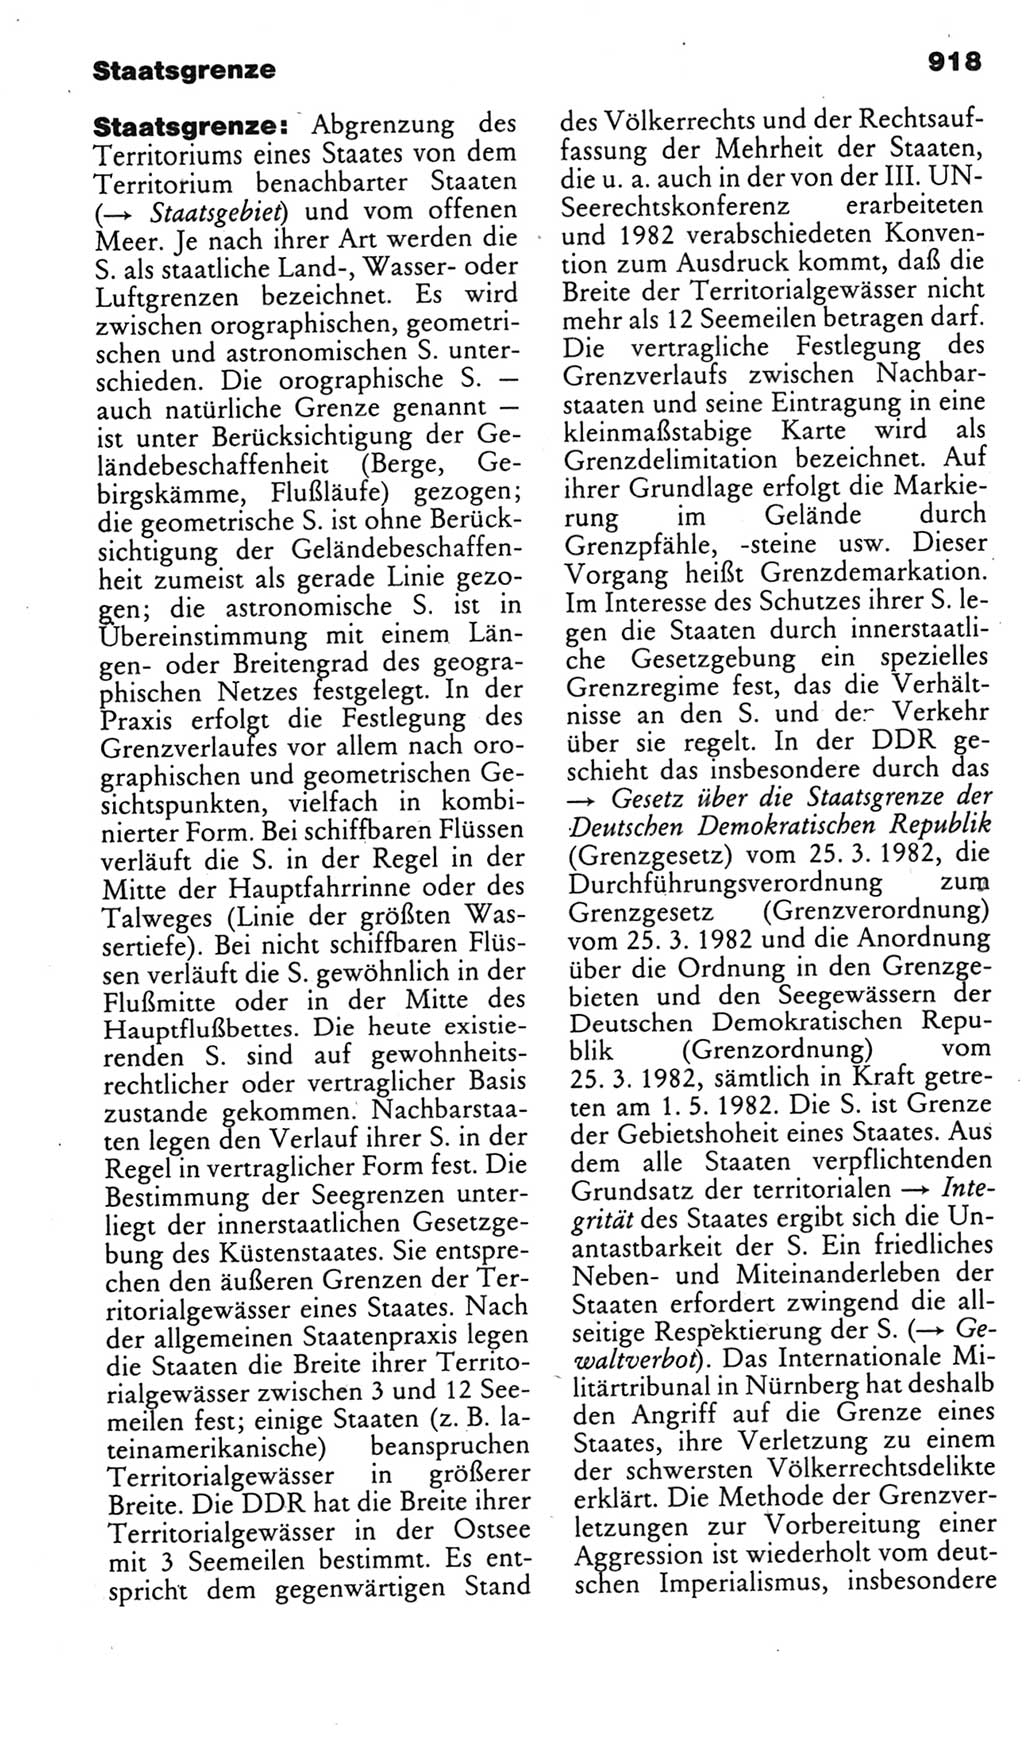 Kleines politisches Wörterbuch [Deutsche Demokratische Republik (DDR)] 1985, Seite 918 (Kl. pol. Wb. DDR 1985, S. 918)